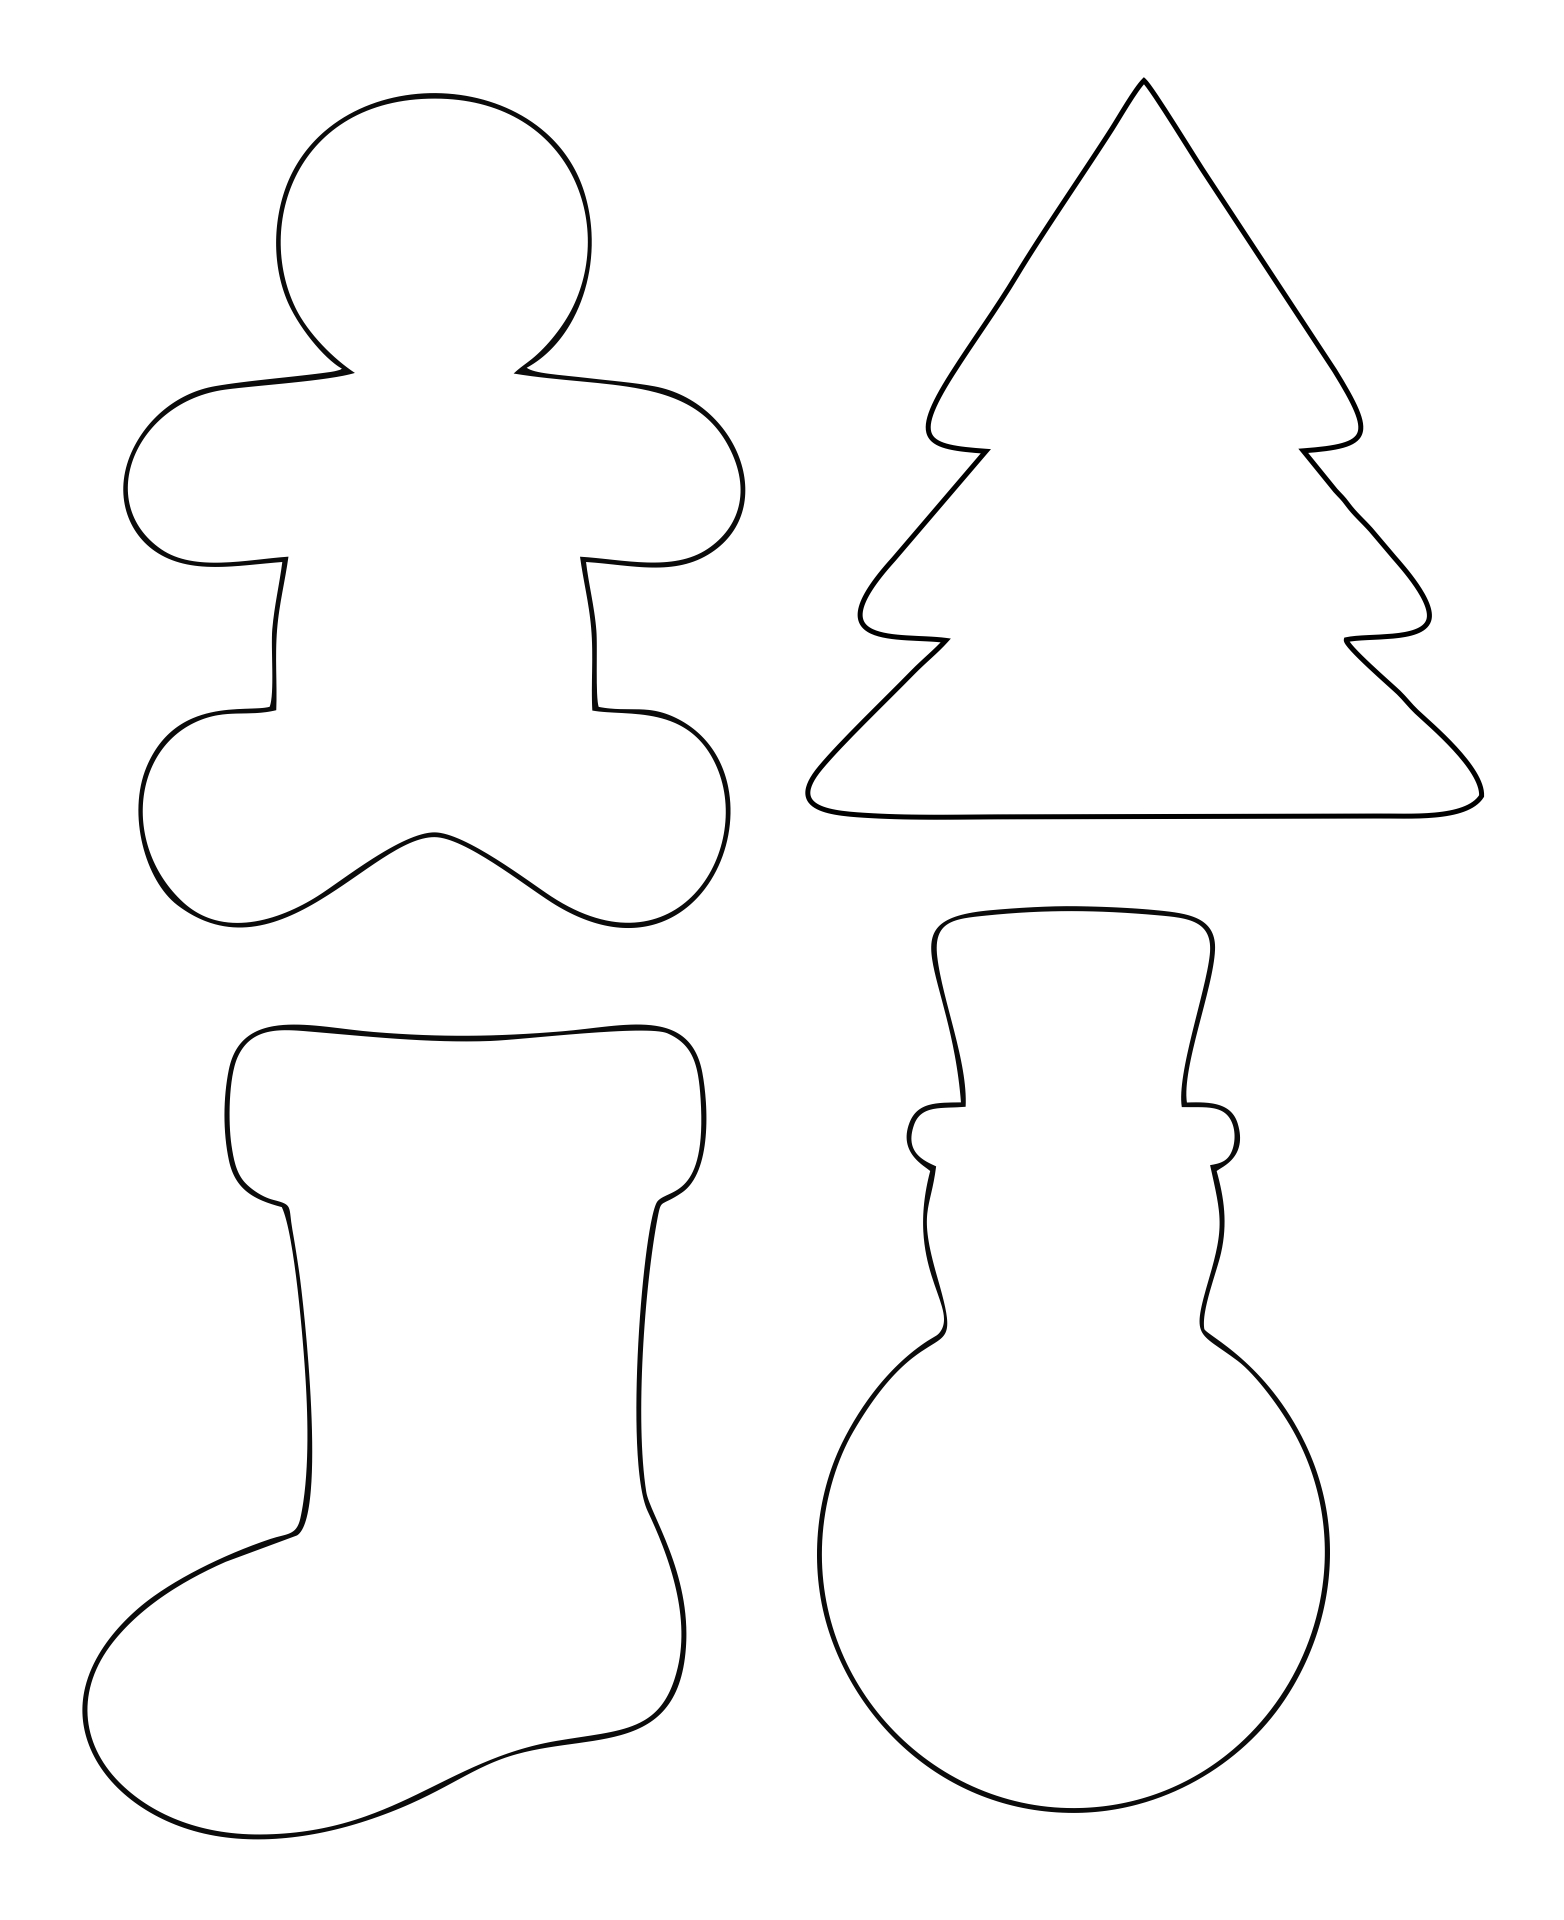 Free Christmas Shapes Templates Printable Printable Form, Templates